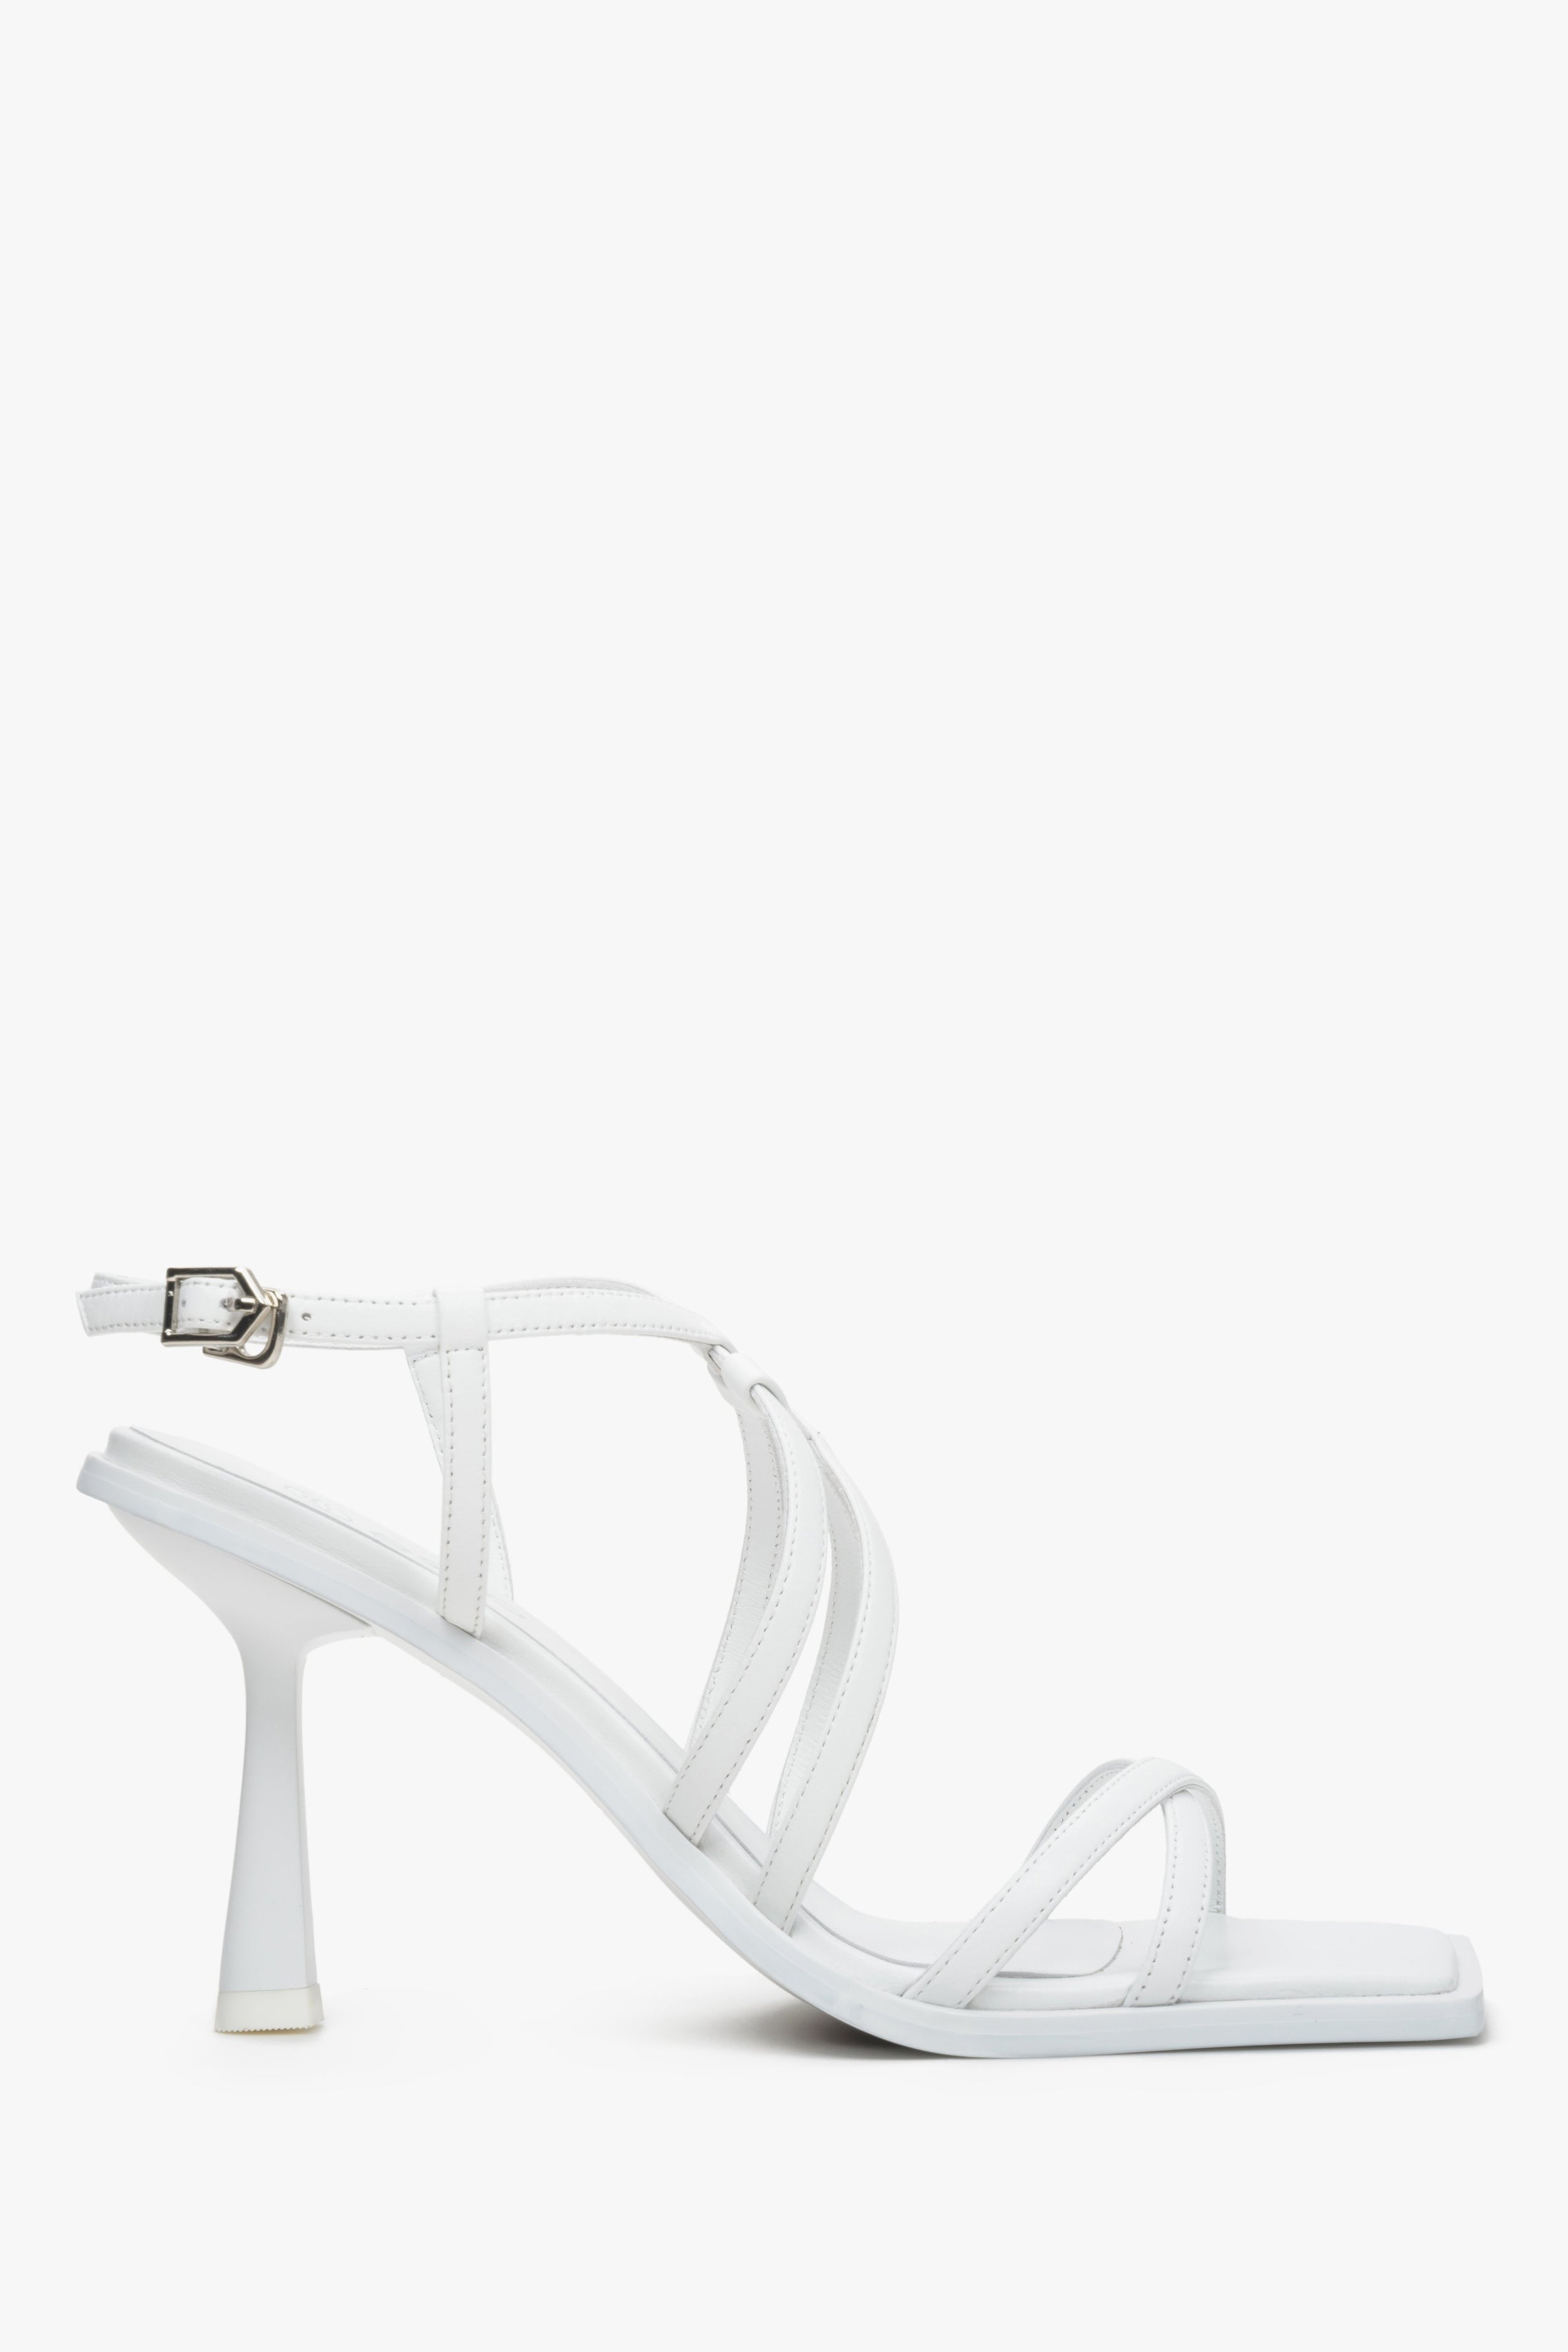 Estro: Białe skórzane sandały damskie na szpilce